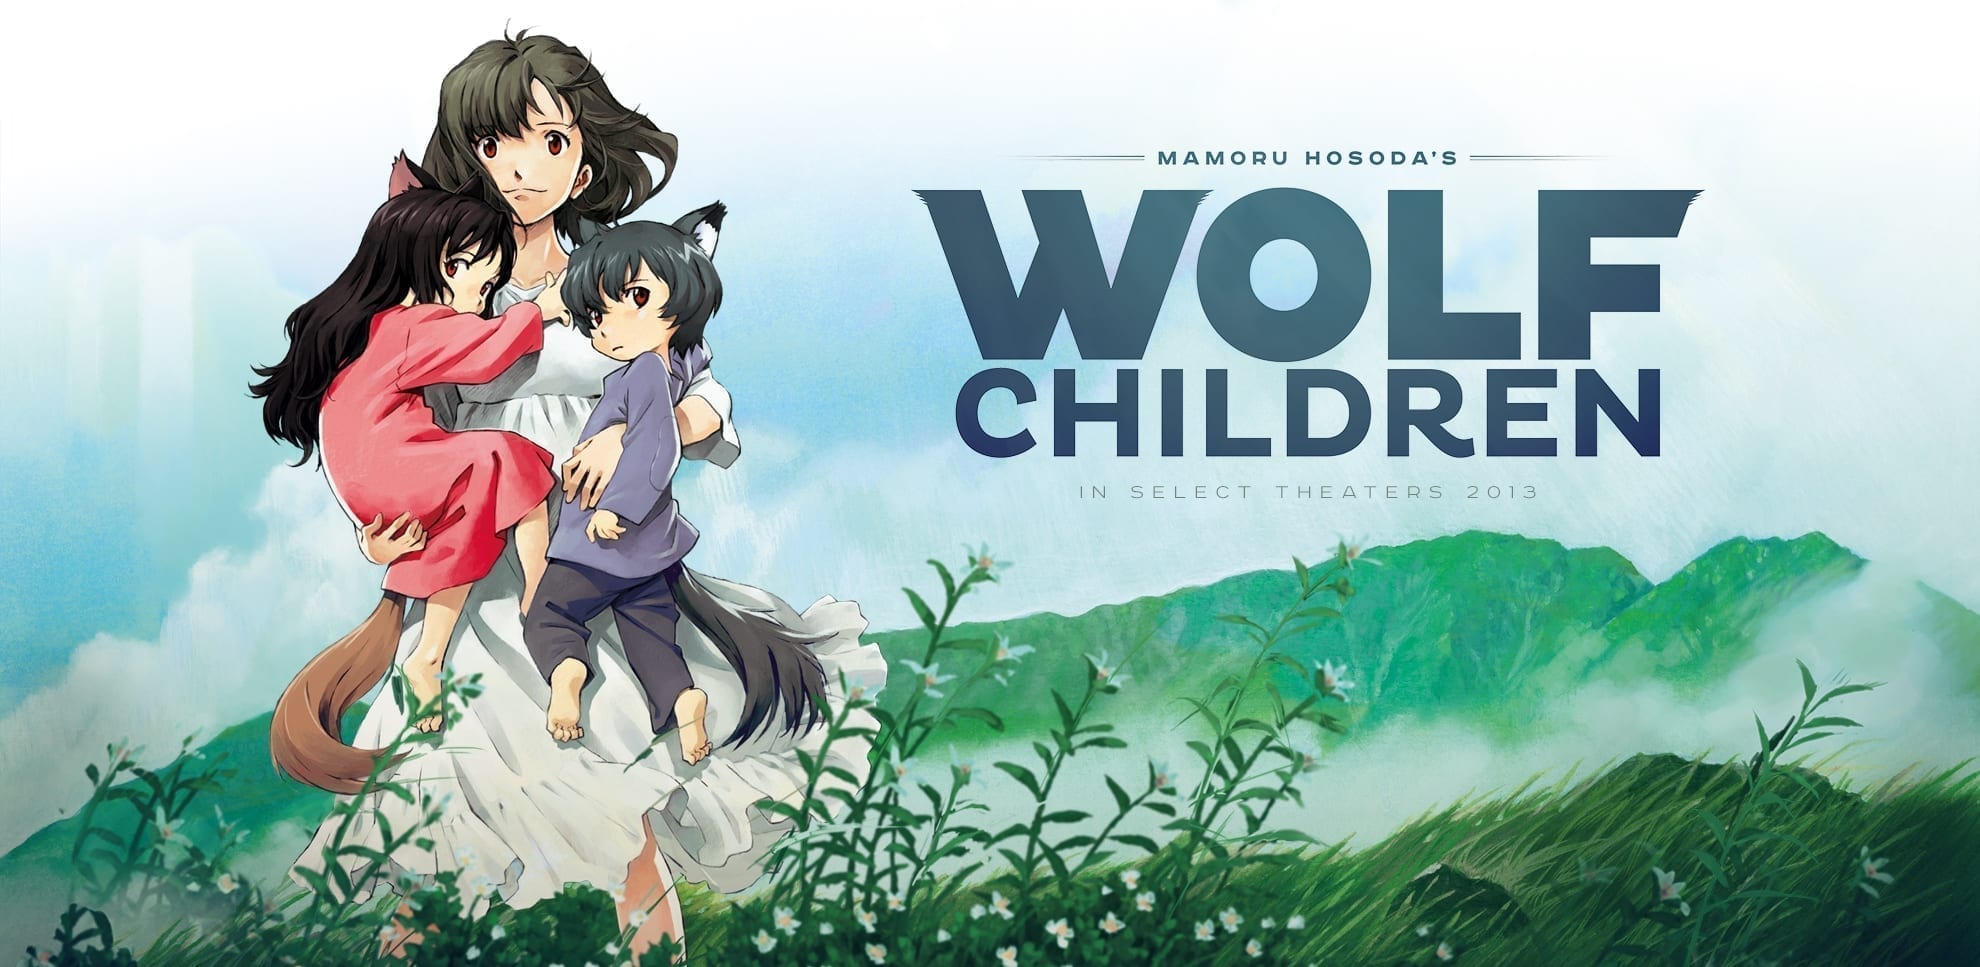 [Anime] Wilcze dzieci – jak wychować małe wilczęta?